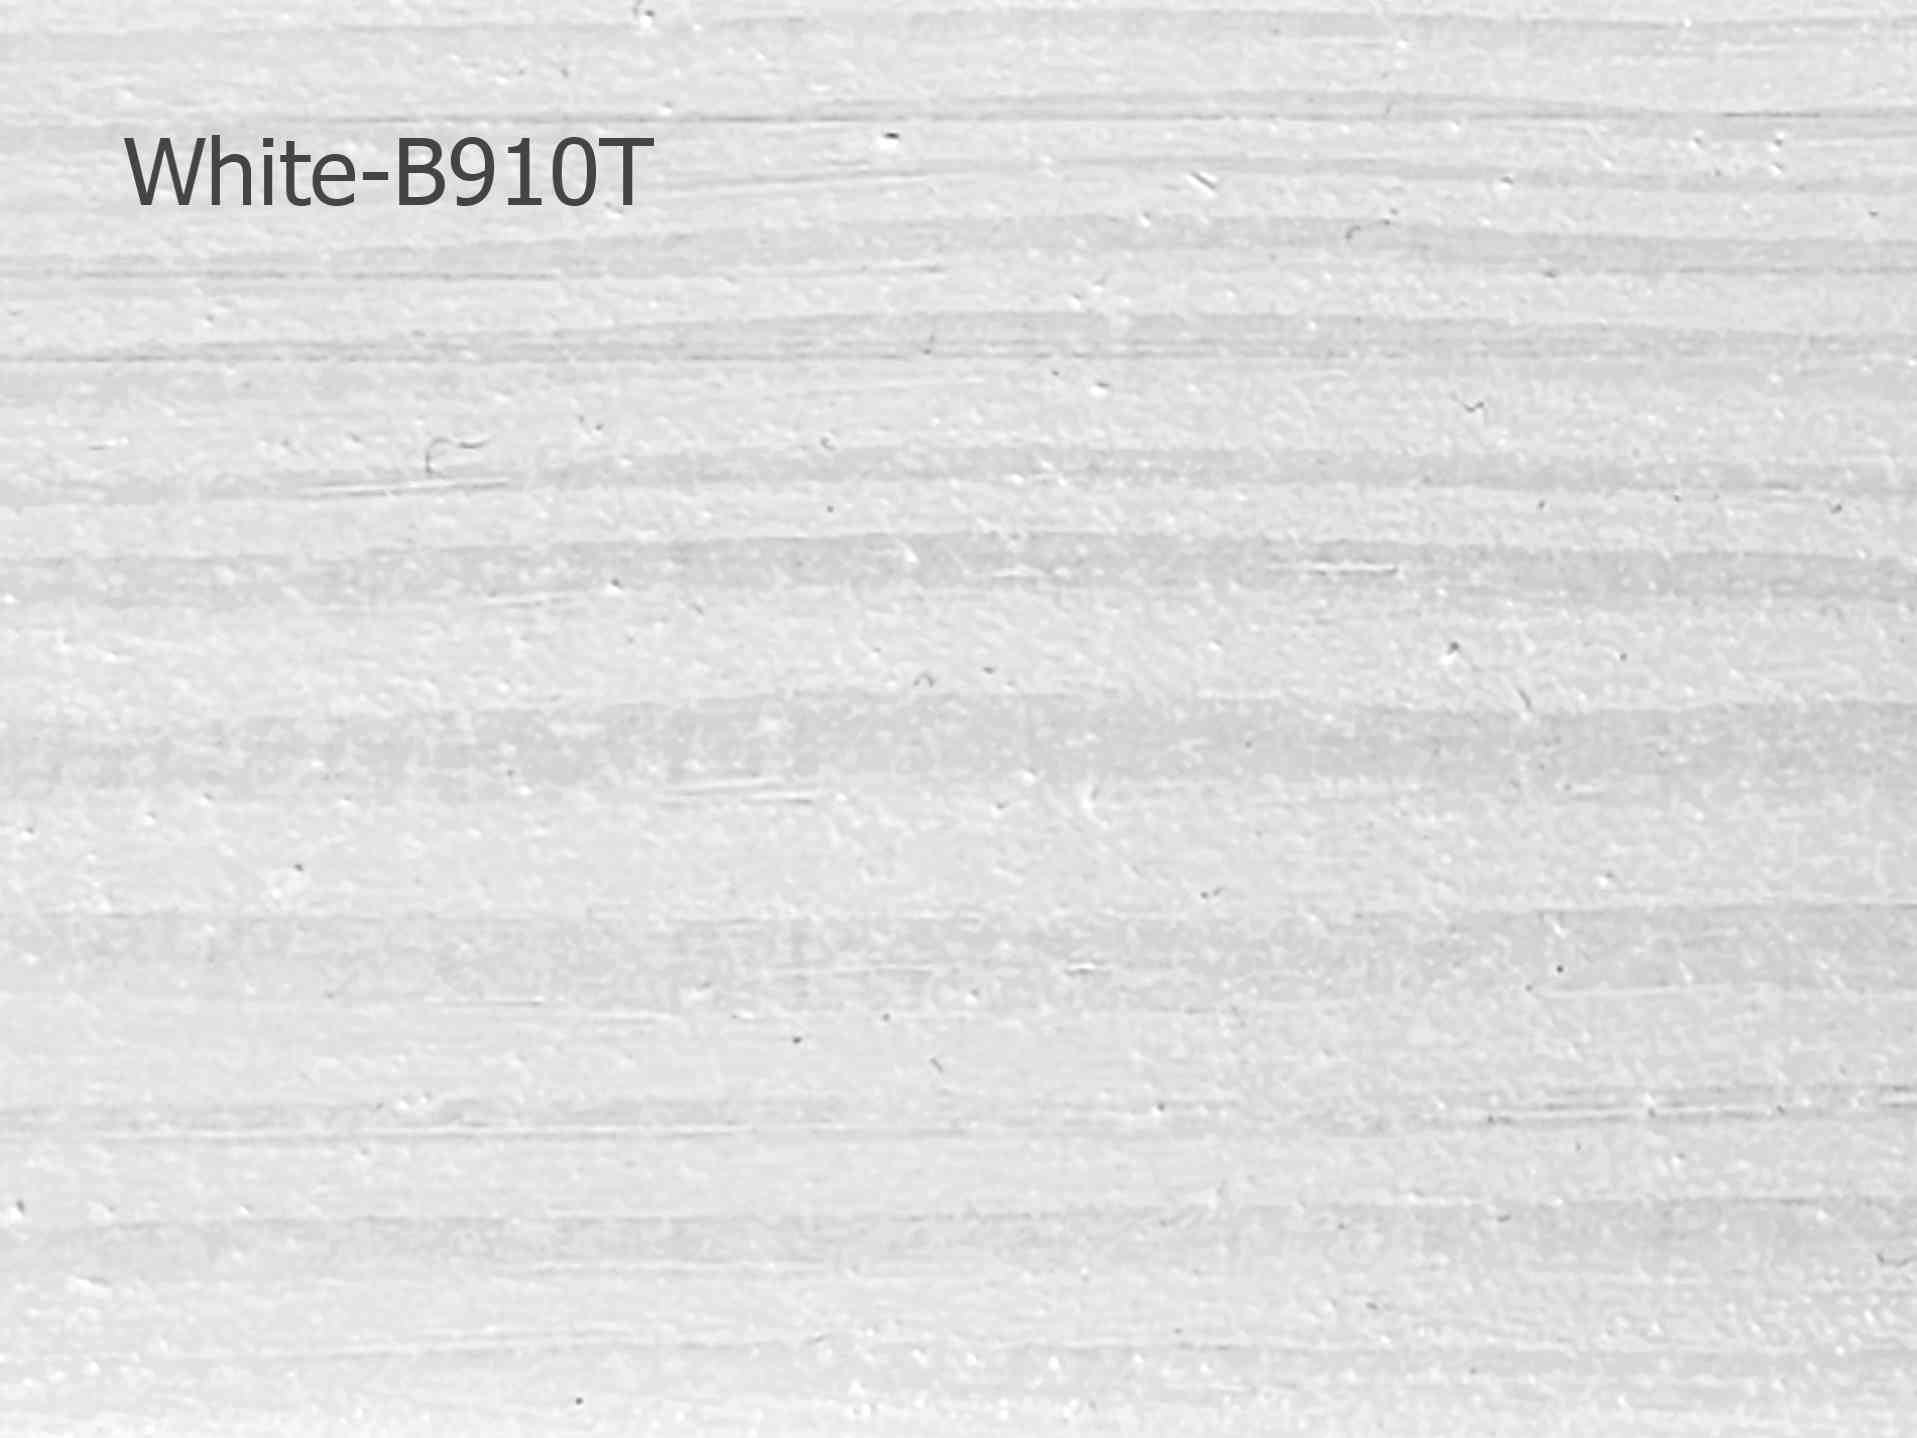 B910T (White)